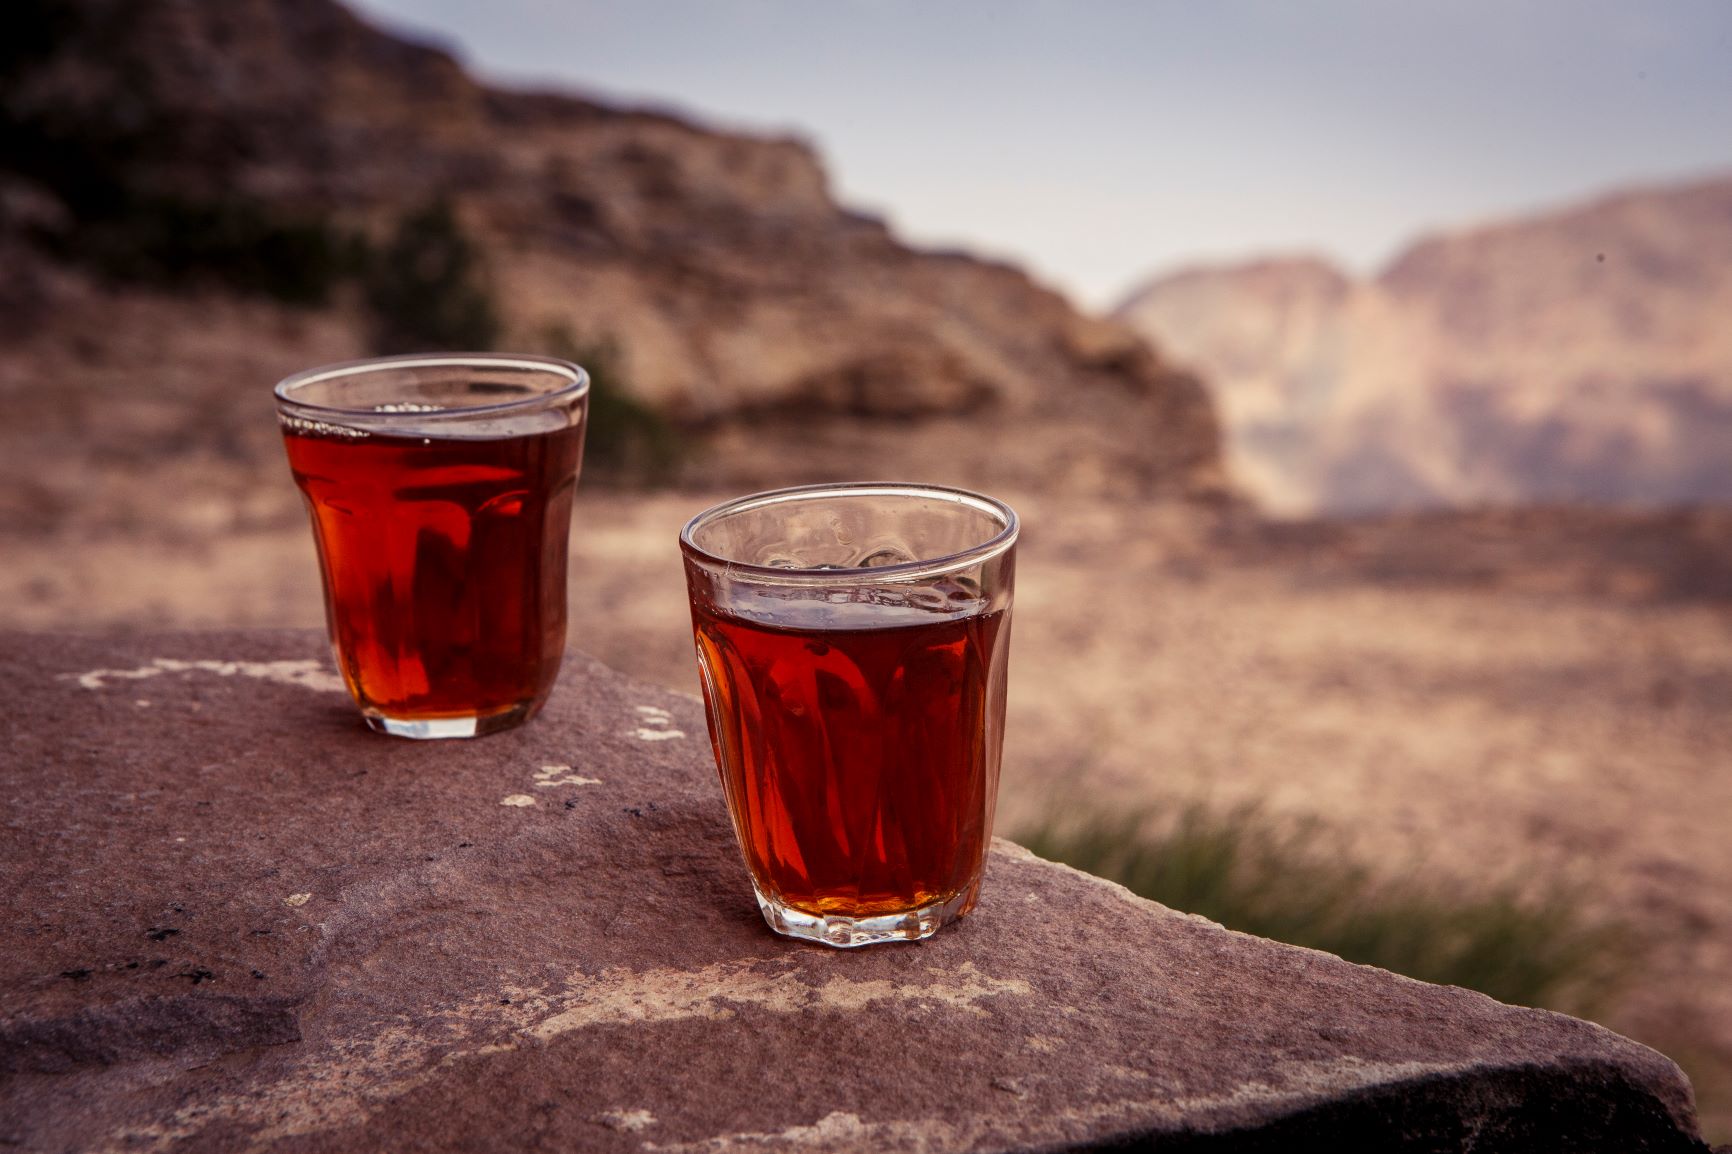 Sweet Bedouin tea